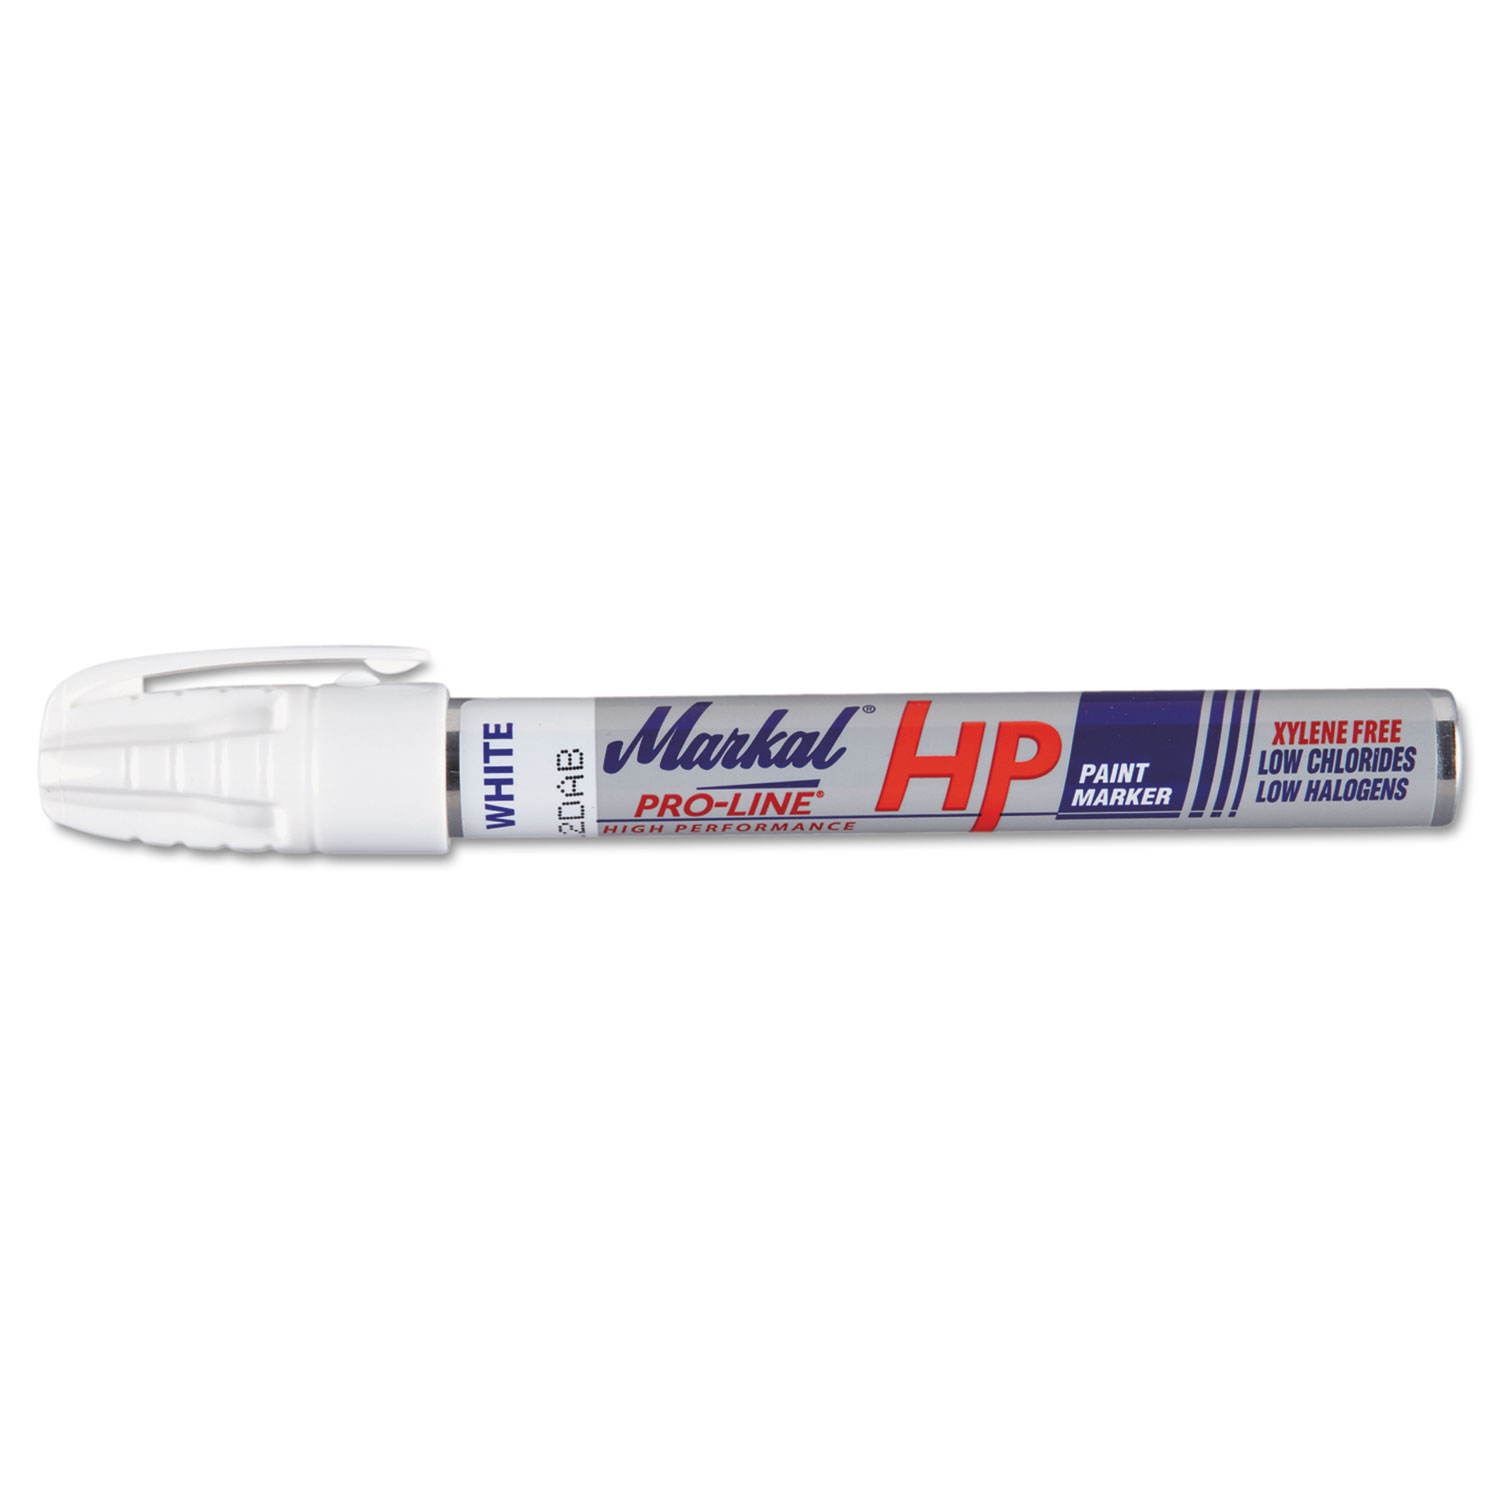  Markal 96960 Pro-Line HP Paint Marker 96960, Medium Bullet Tip, White (MRK96960) 